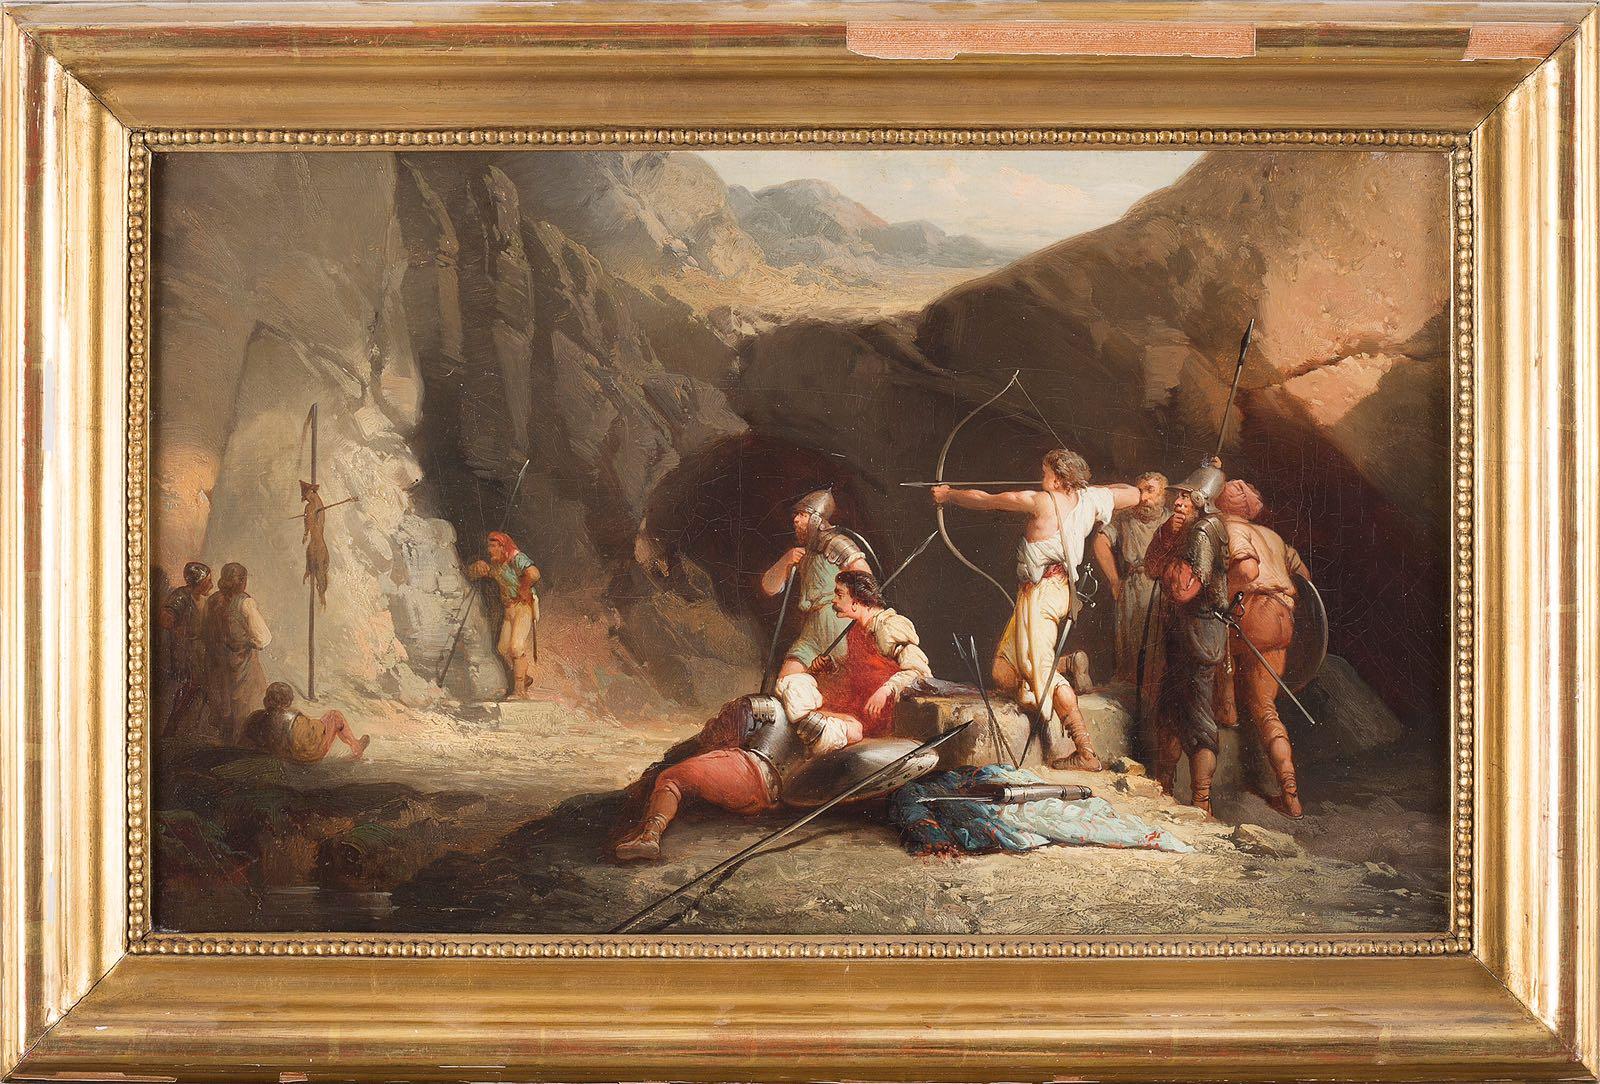 Unknown Figurative Painting – Archery - Öl auf Leinwand von einem anonymen französischen Meister Ende des 18./Anfang des 19. Jahrhunderts